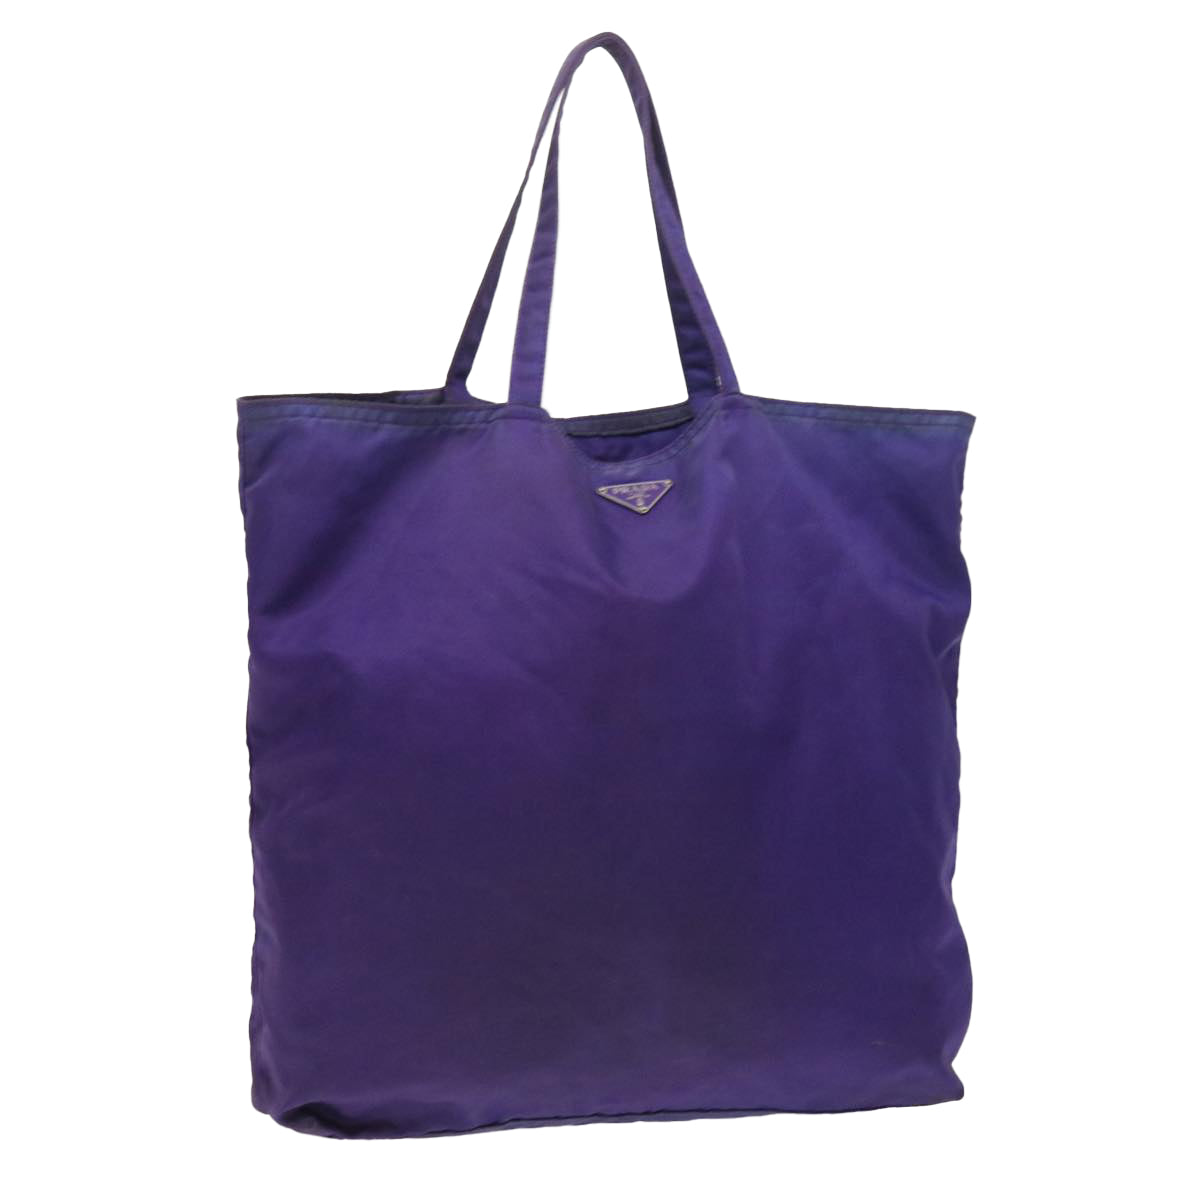 Handbag Prada Purple in Suede - 36787945